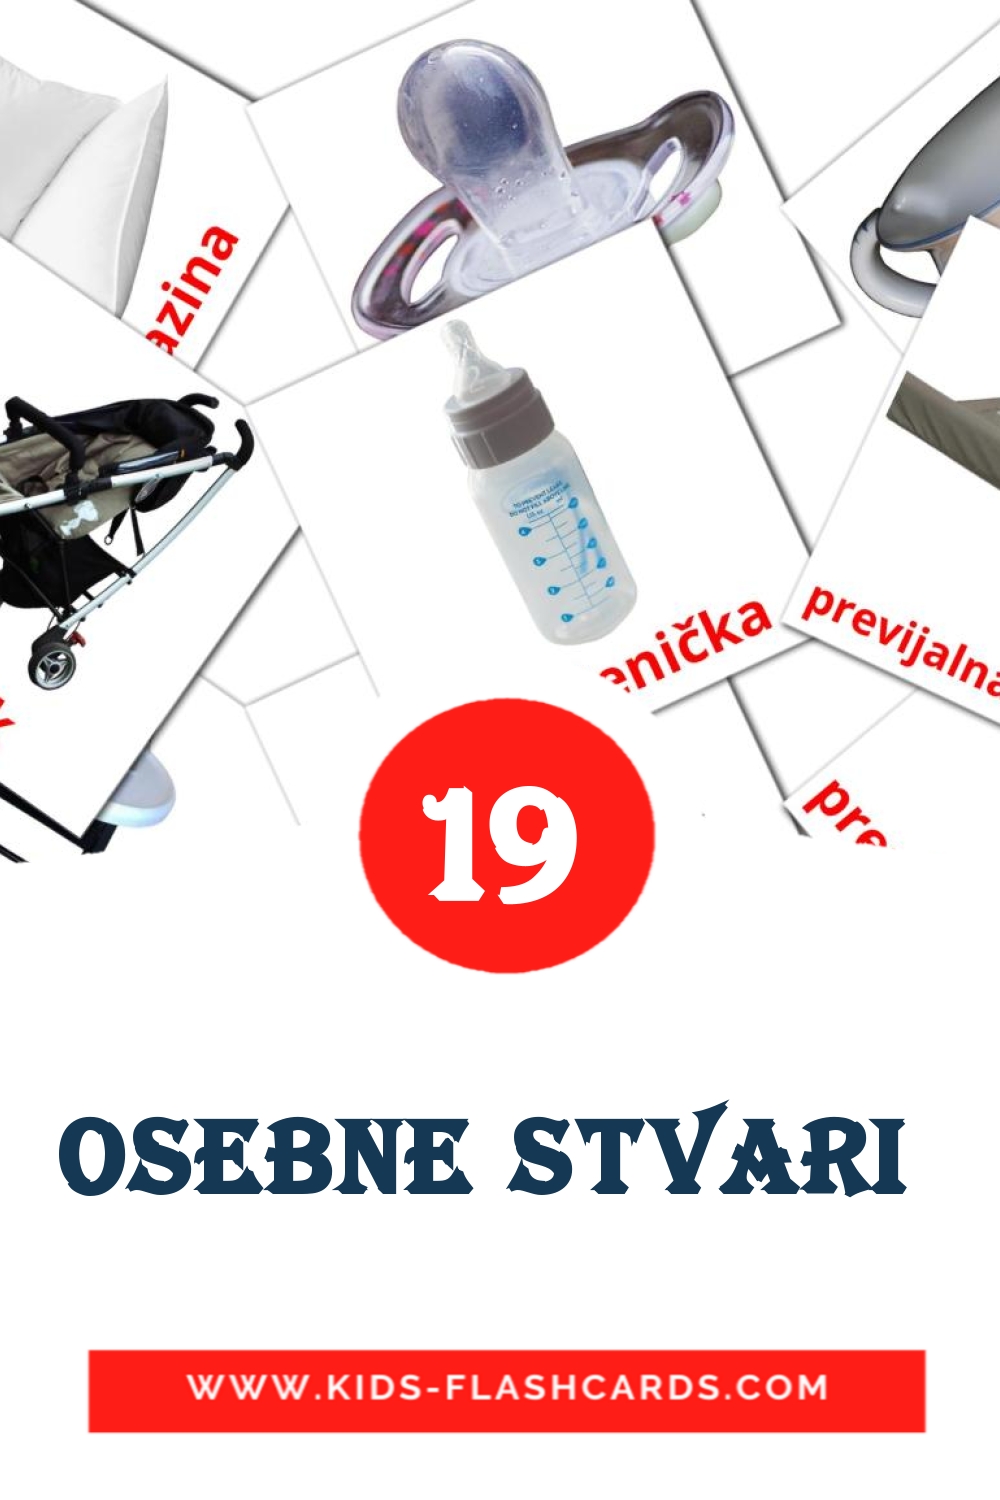 Osebne stvari  на словенском для Детского Сада (19 карточек)